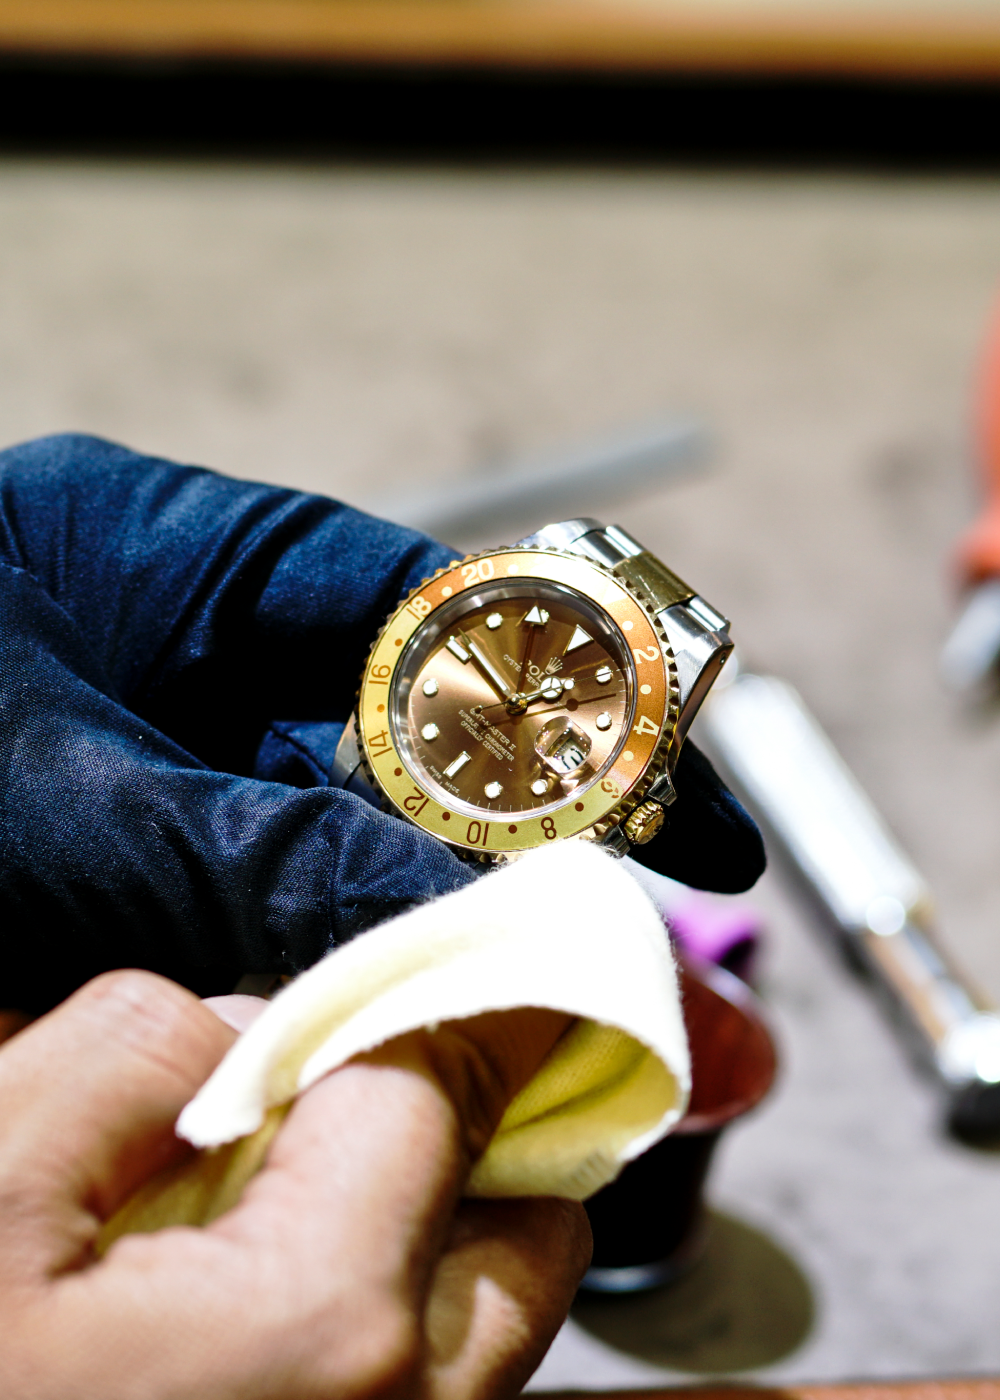 Butik jam tangan mewah jual berbagai jam tangan mewah seperti rolex dan omega. Proses belanja cepat dan bebas ongkir untuk langsung di antar kerumah Anda.